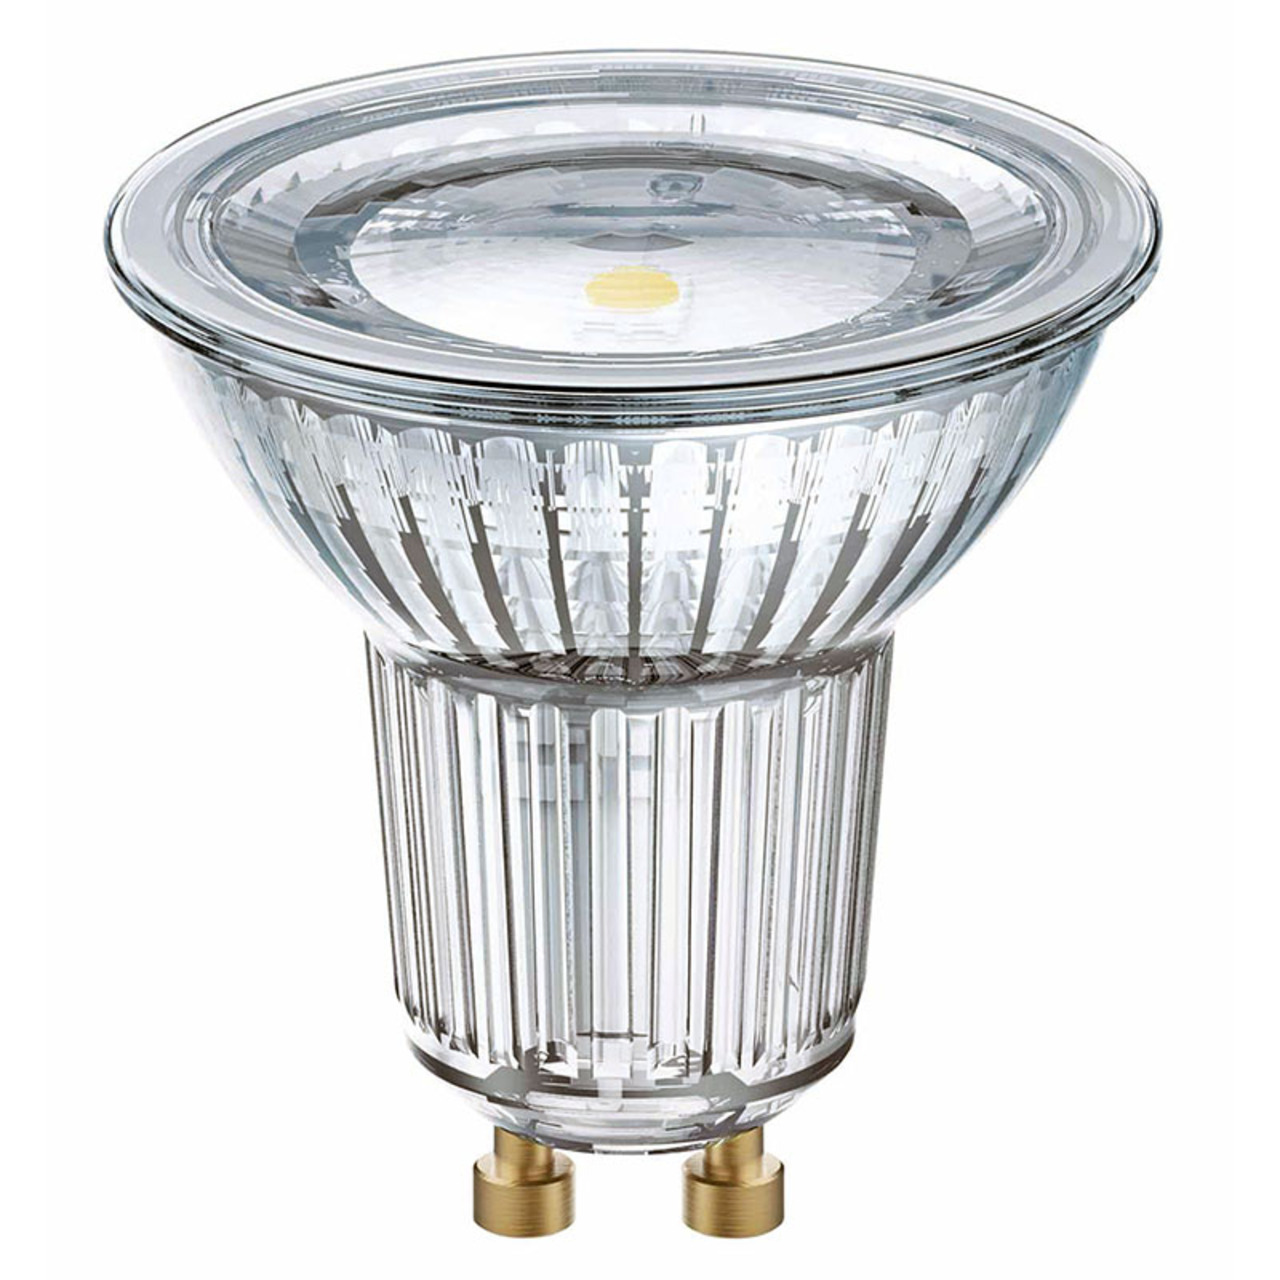 OSRAM LED STAR 4-3-W-GU10-LED-Lampe mit Glas-Reflektor- warmweiss- 120-